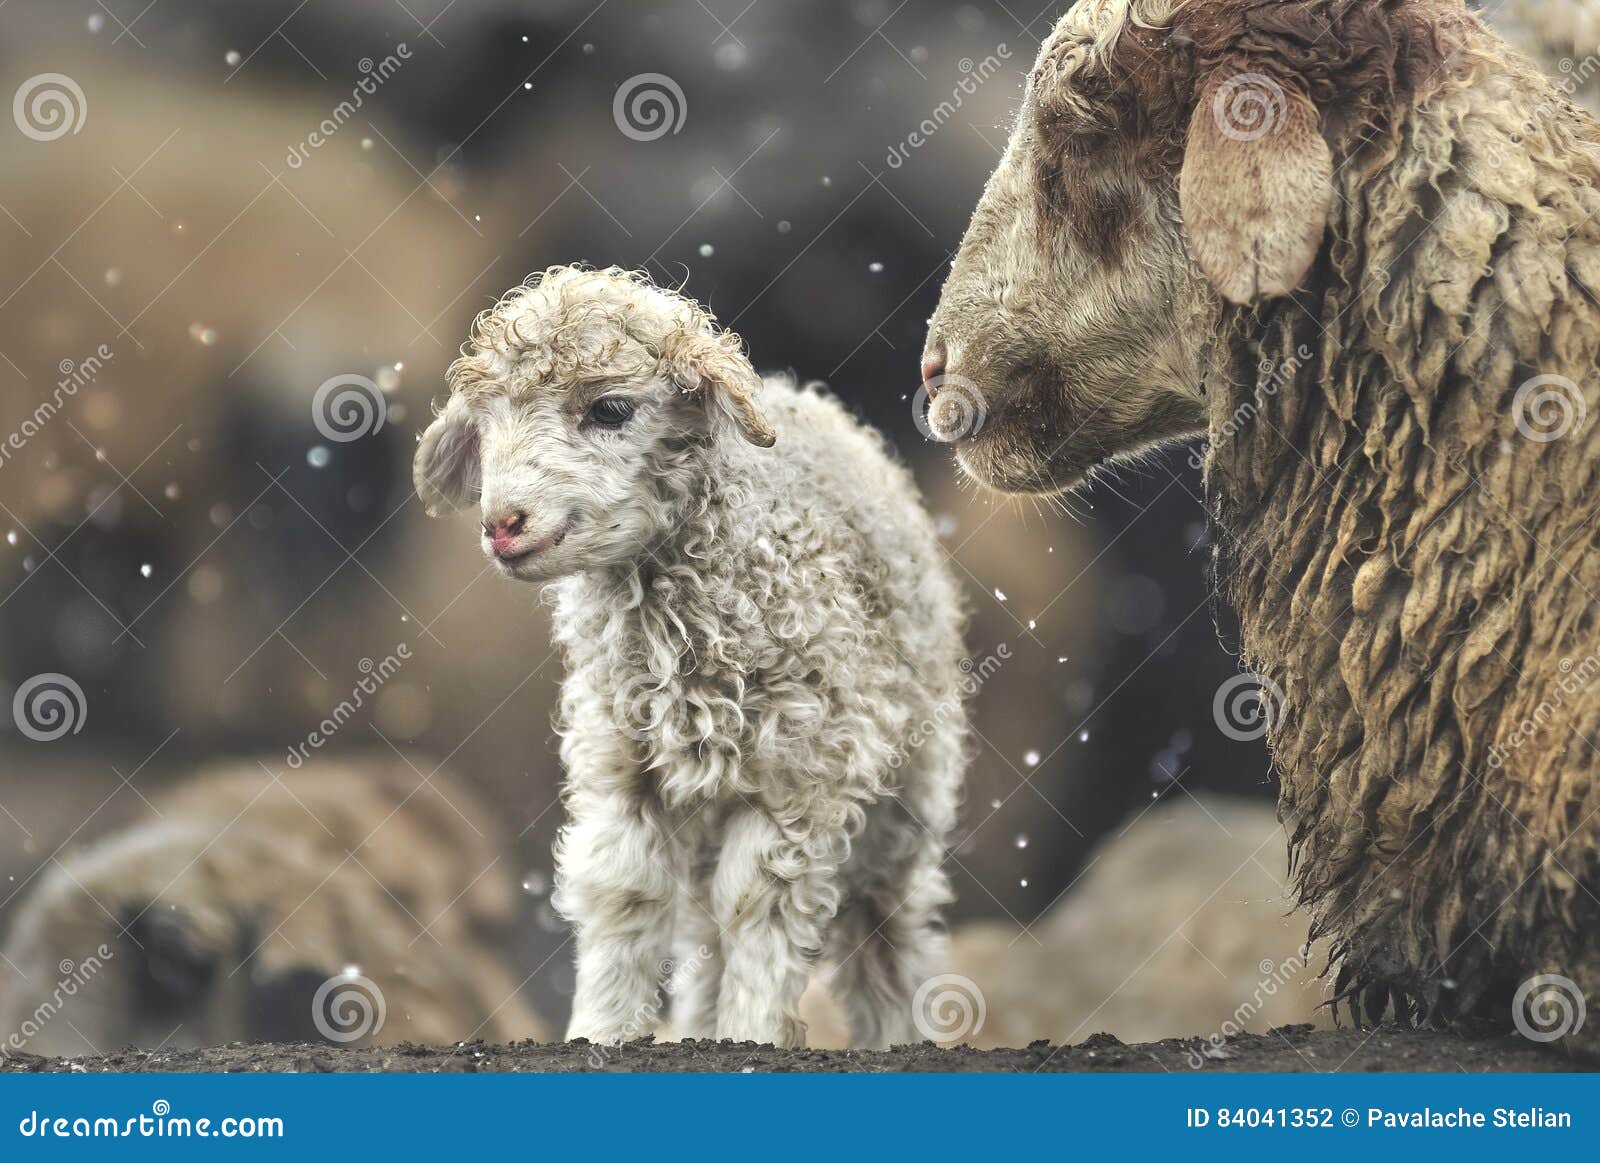 sheep with her lamb newborn